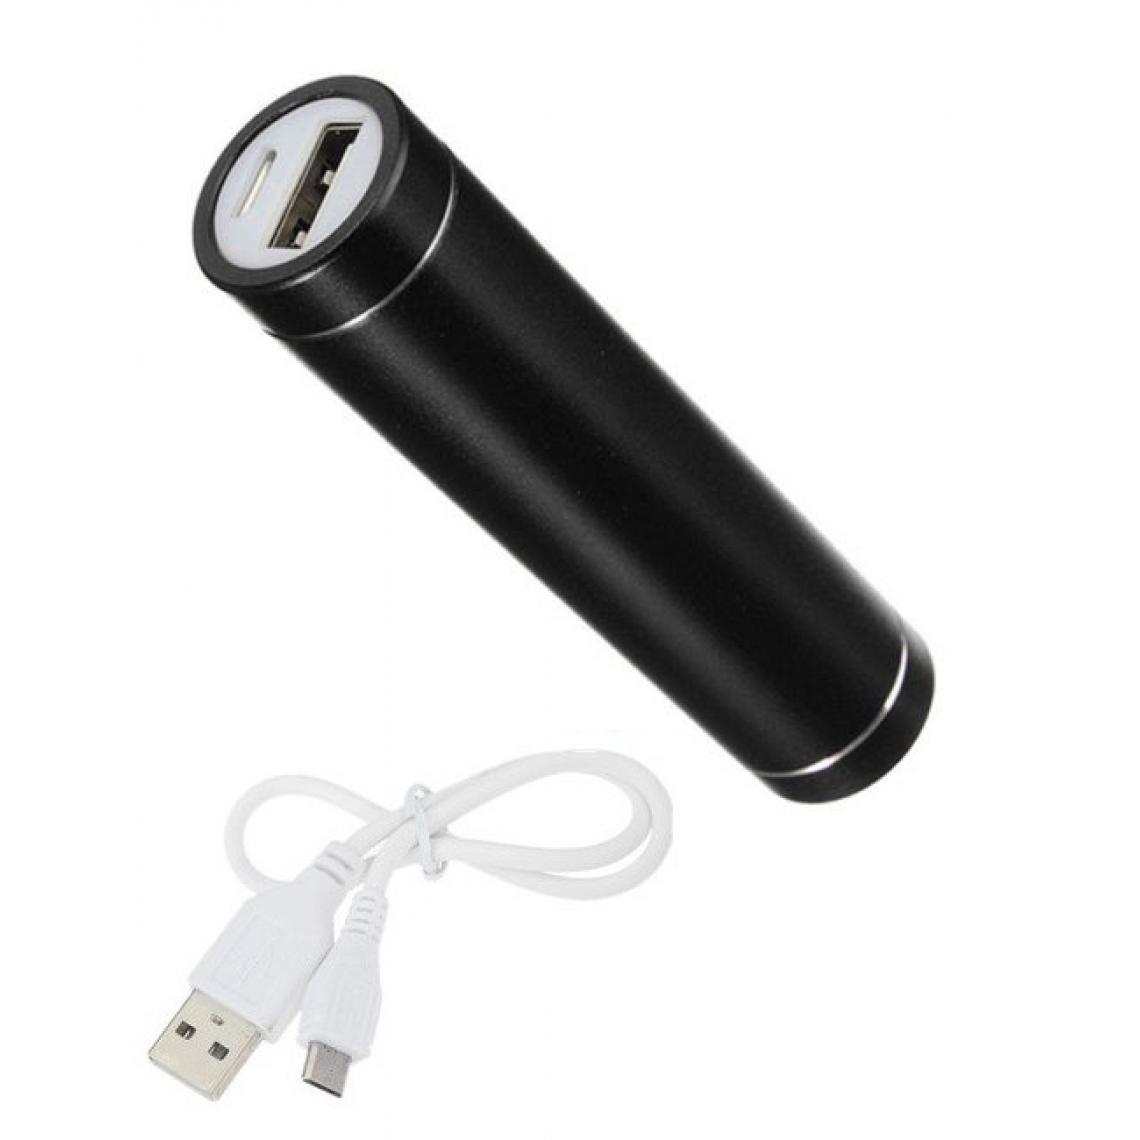 Shot - Batterie Chargeur Externe pour ALCATEL 1 2019 Power Bank 2600mAh avec Cable USB/Mirco USB Secours Telephone (NOIR) - Chargeur secteur téléphone